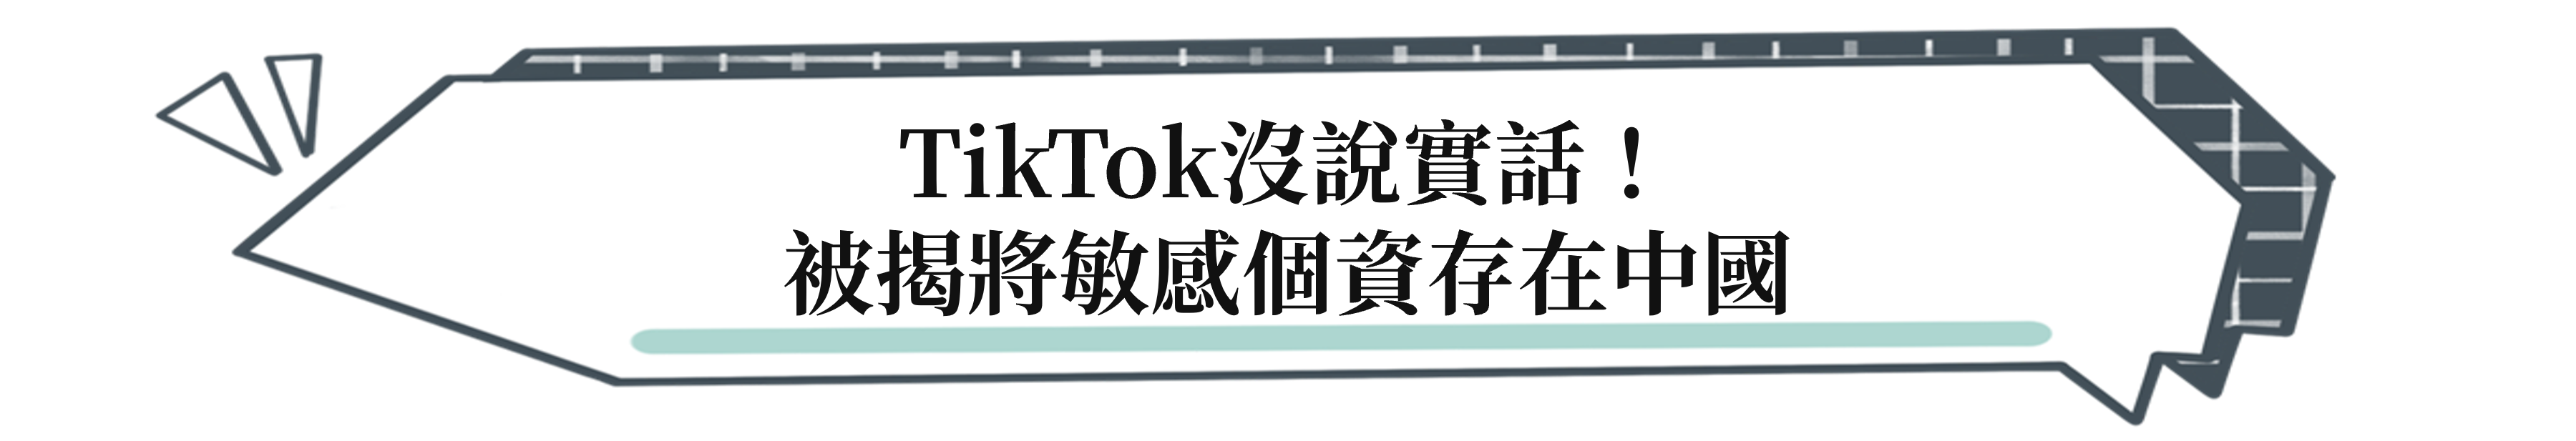 TikTok沒說實話！被揭將敏感個資存在中國